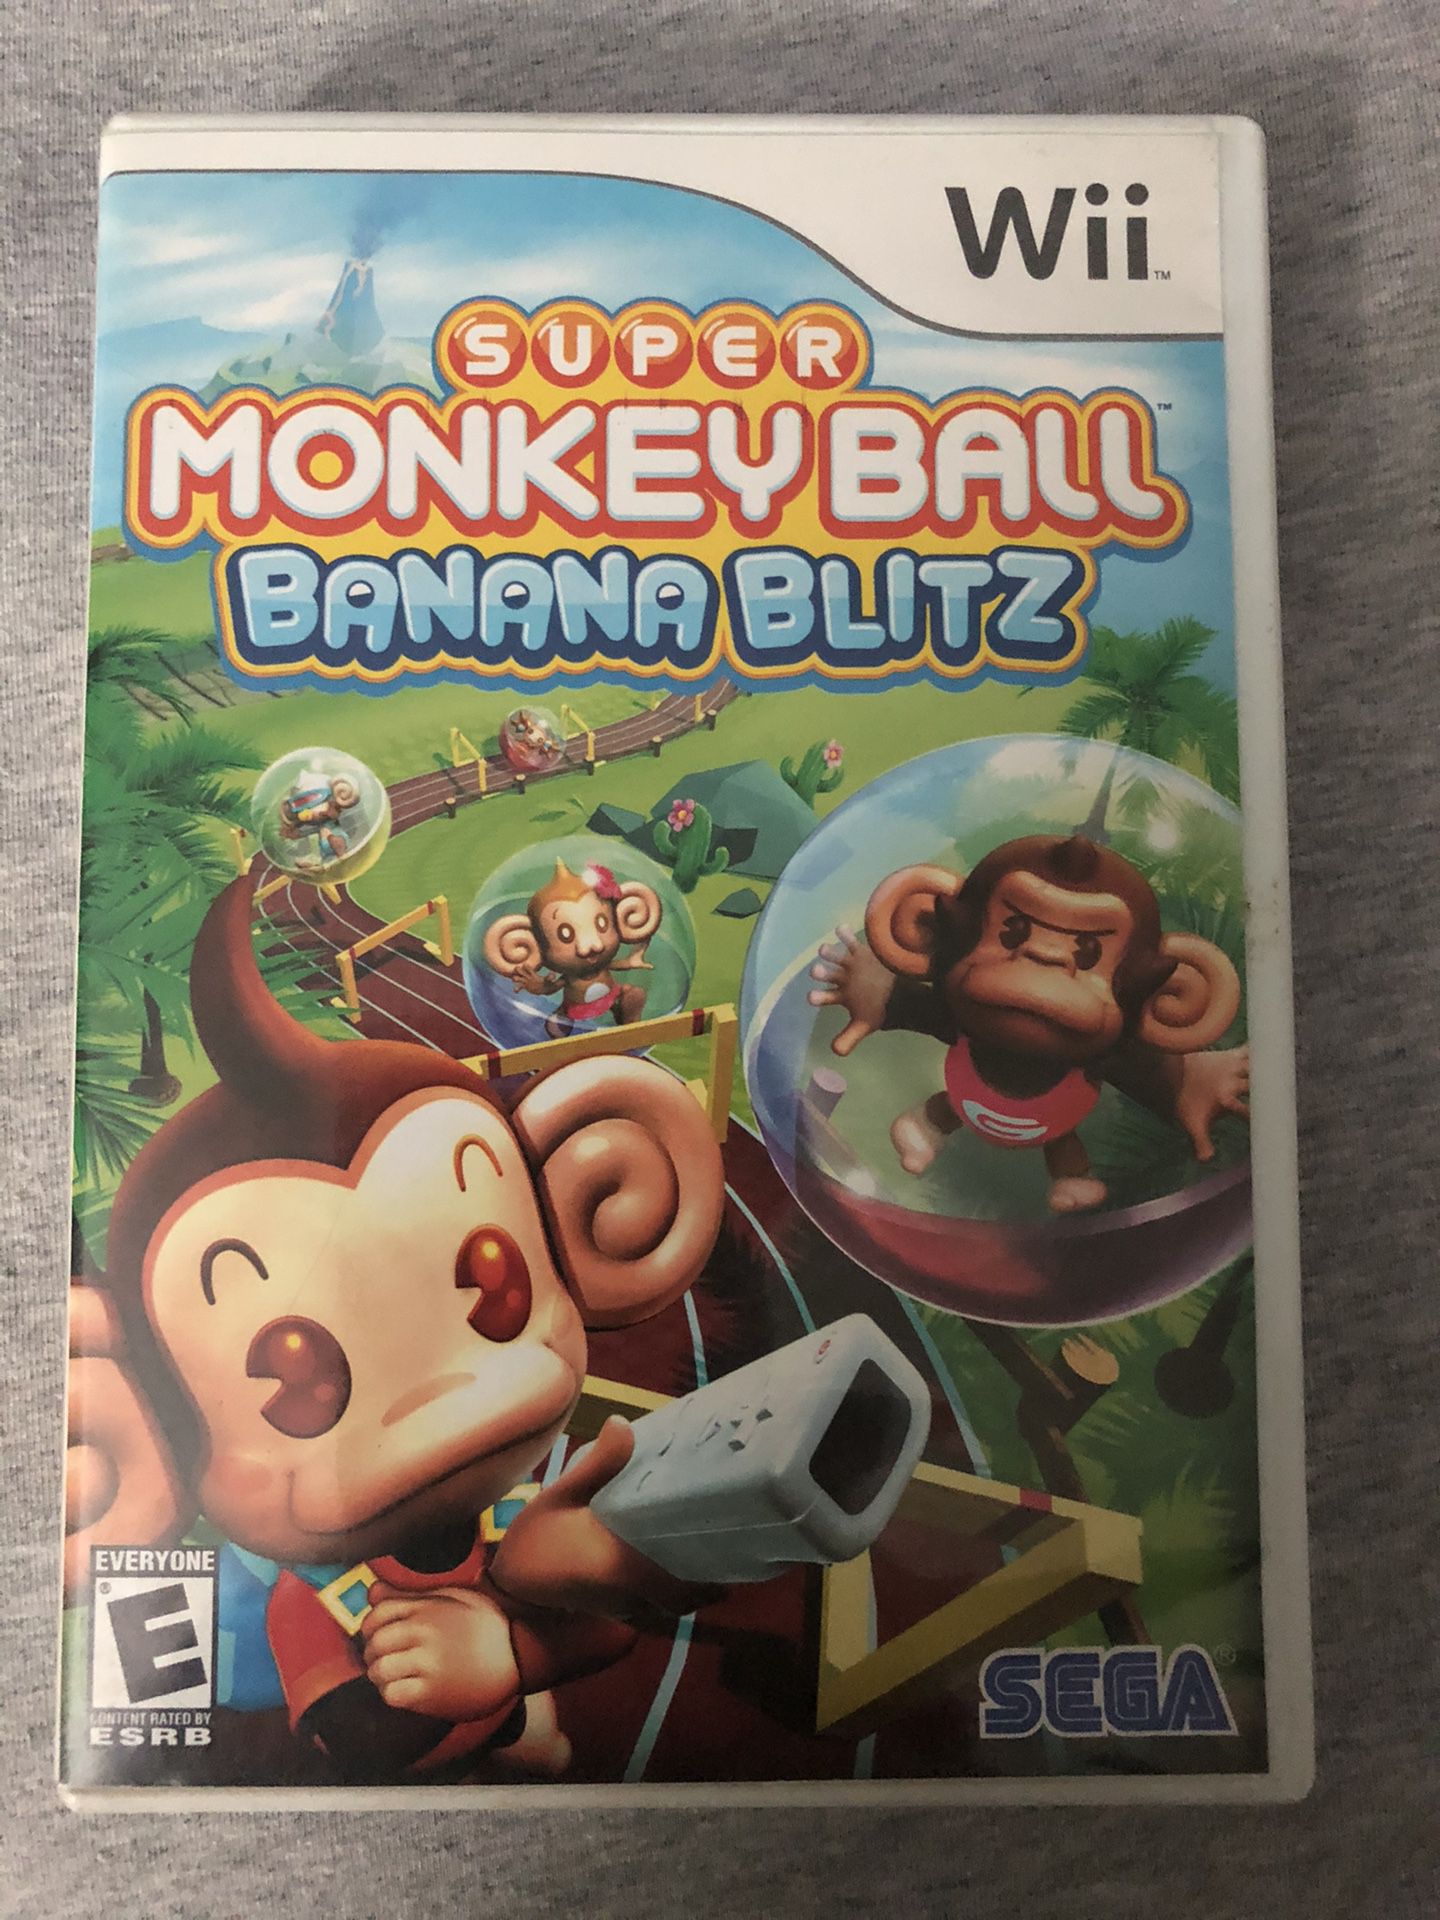 Super Monkey Ball Banana Blitz Wii game